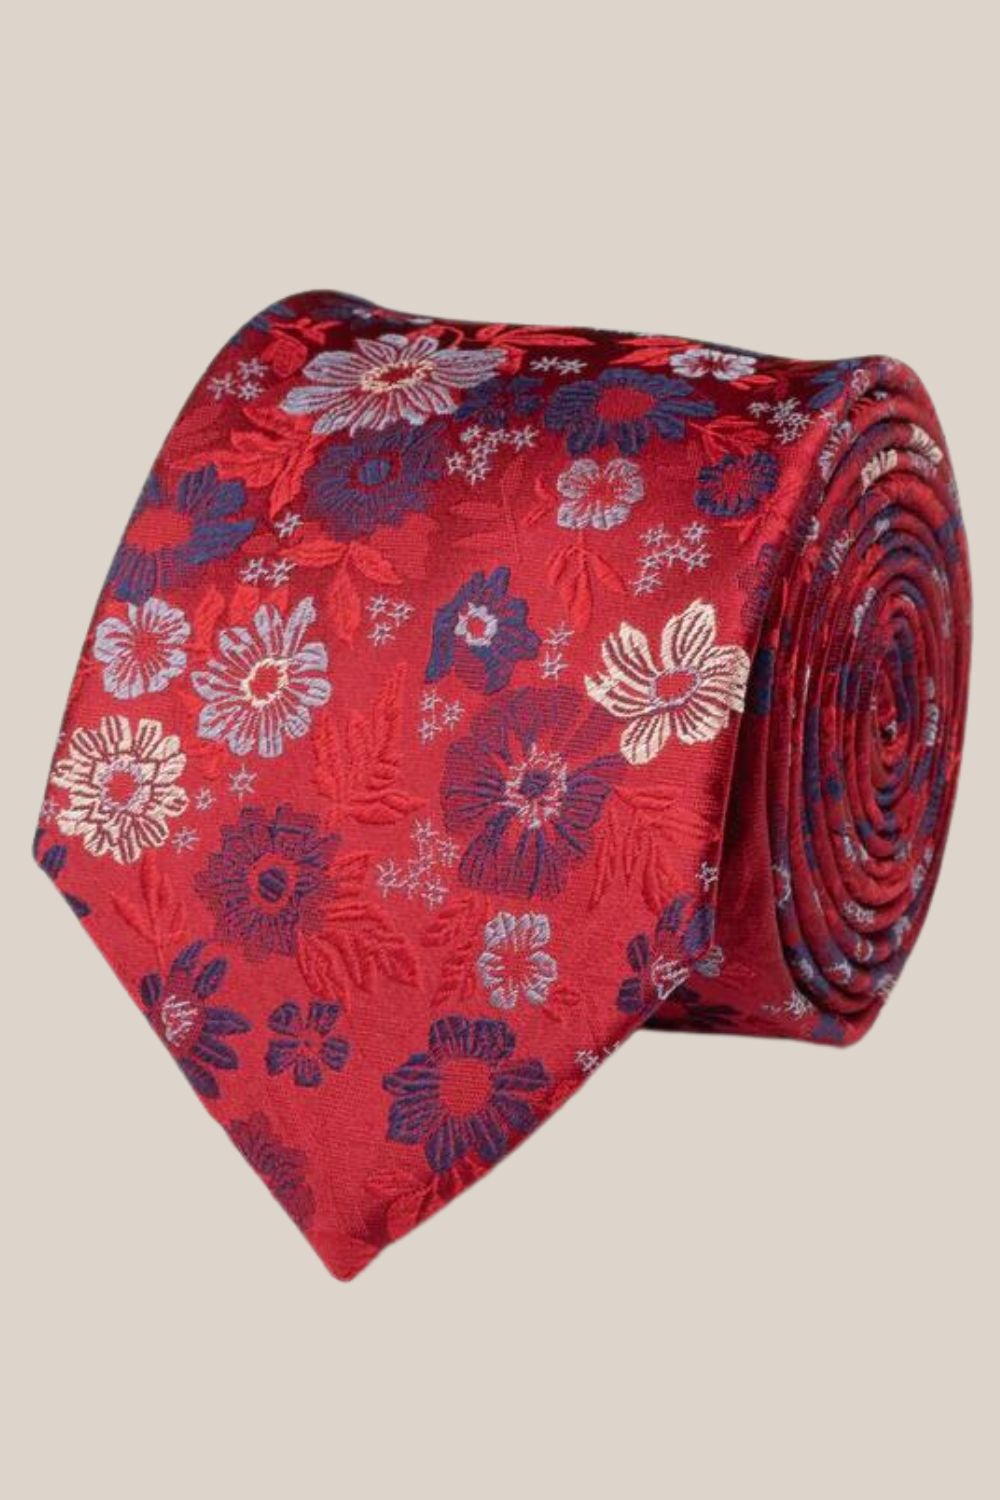 James Harper Floral Tie